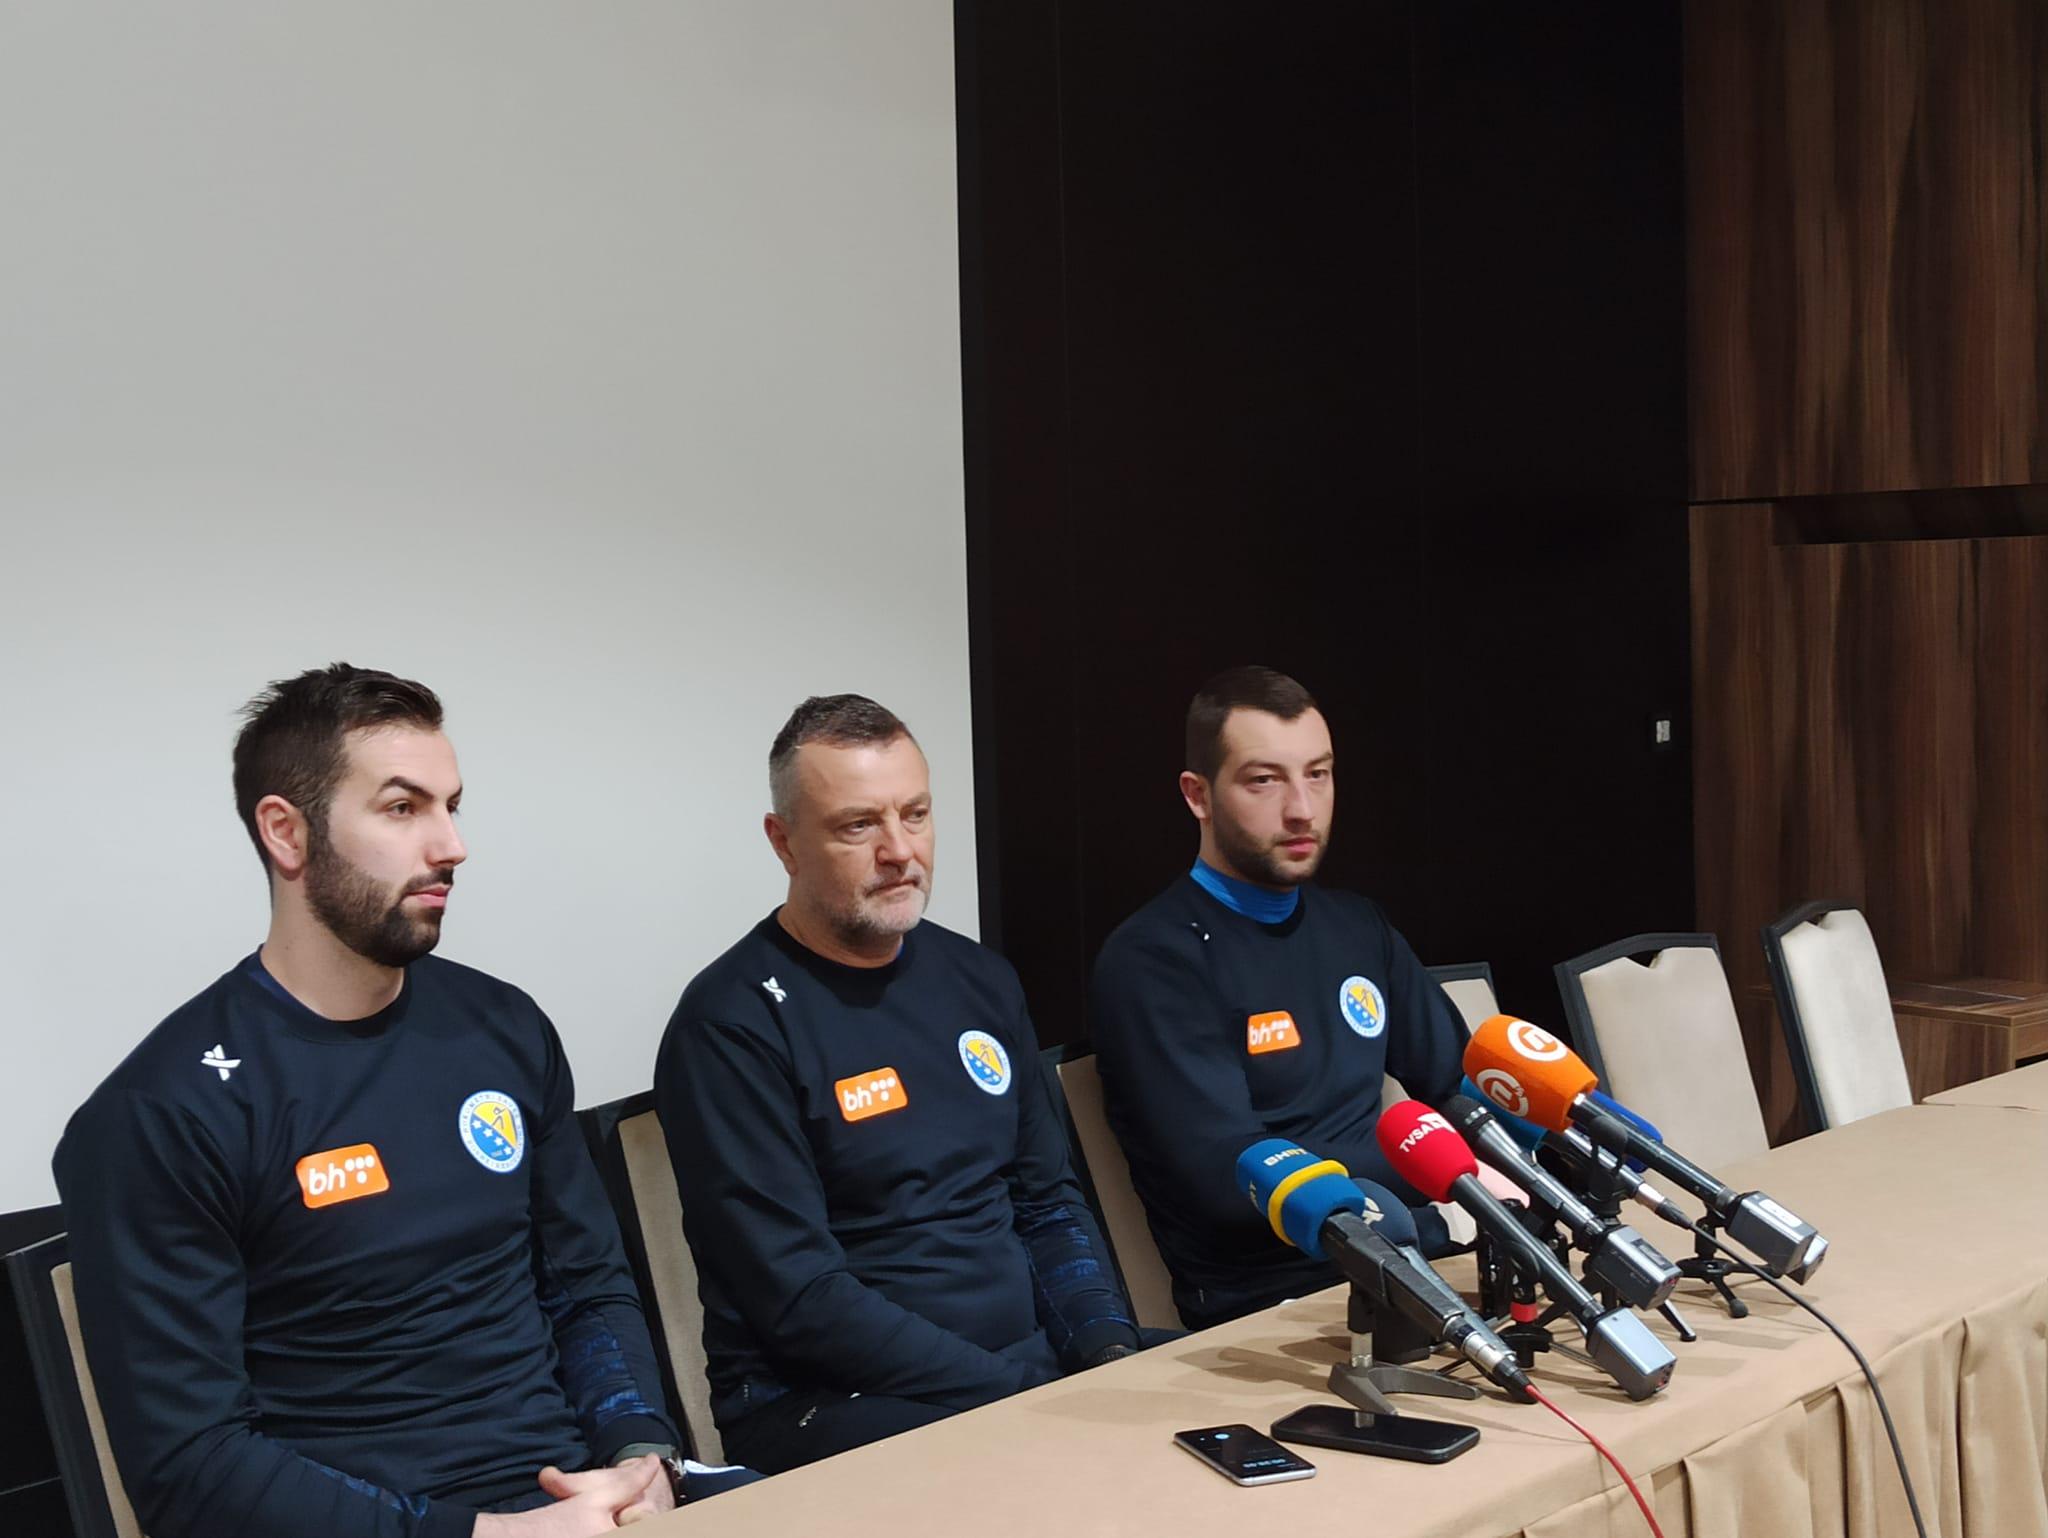 Selektor Ivica Obrvan: Vranješa i braću Burić oslobodio sam obaveza